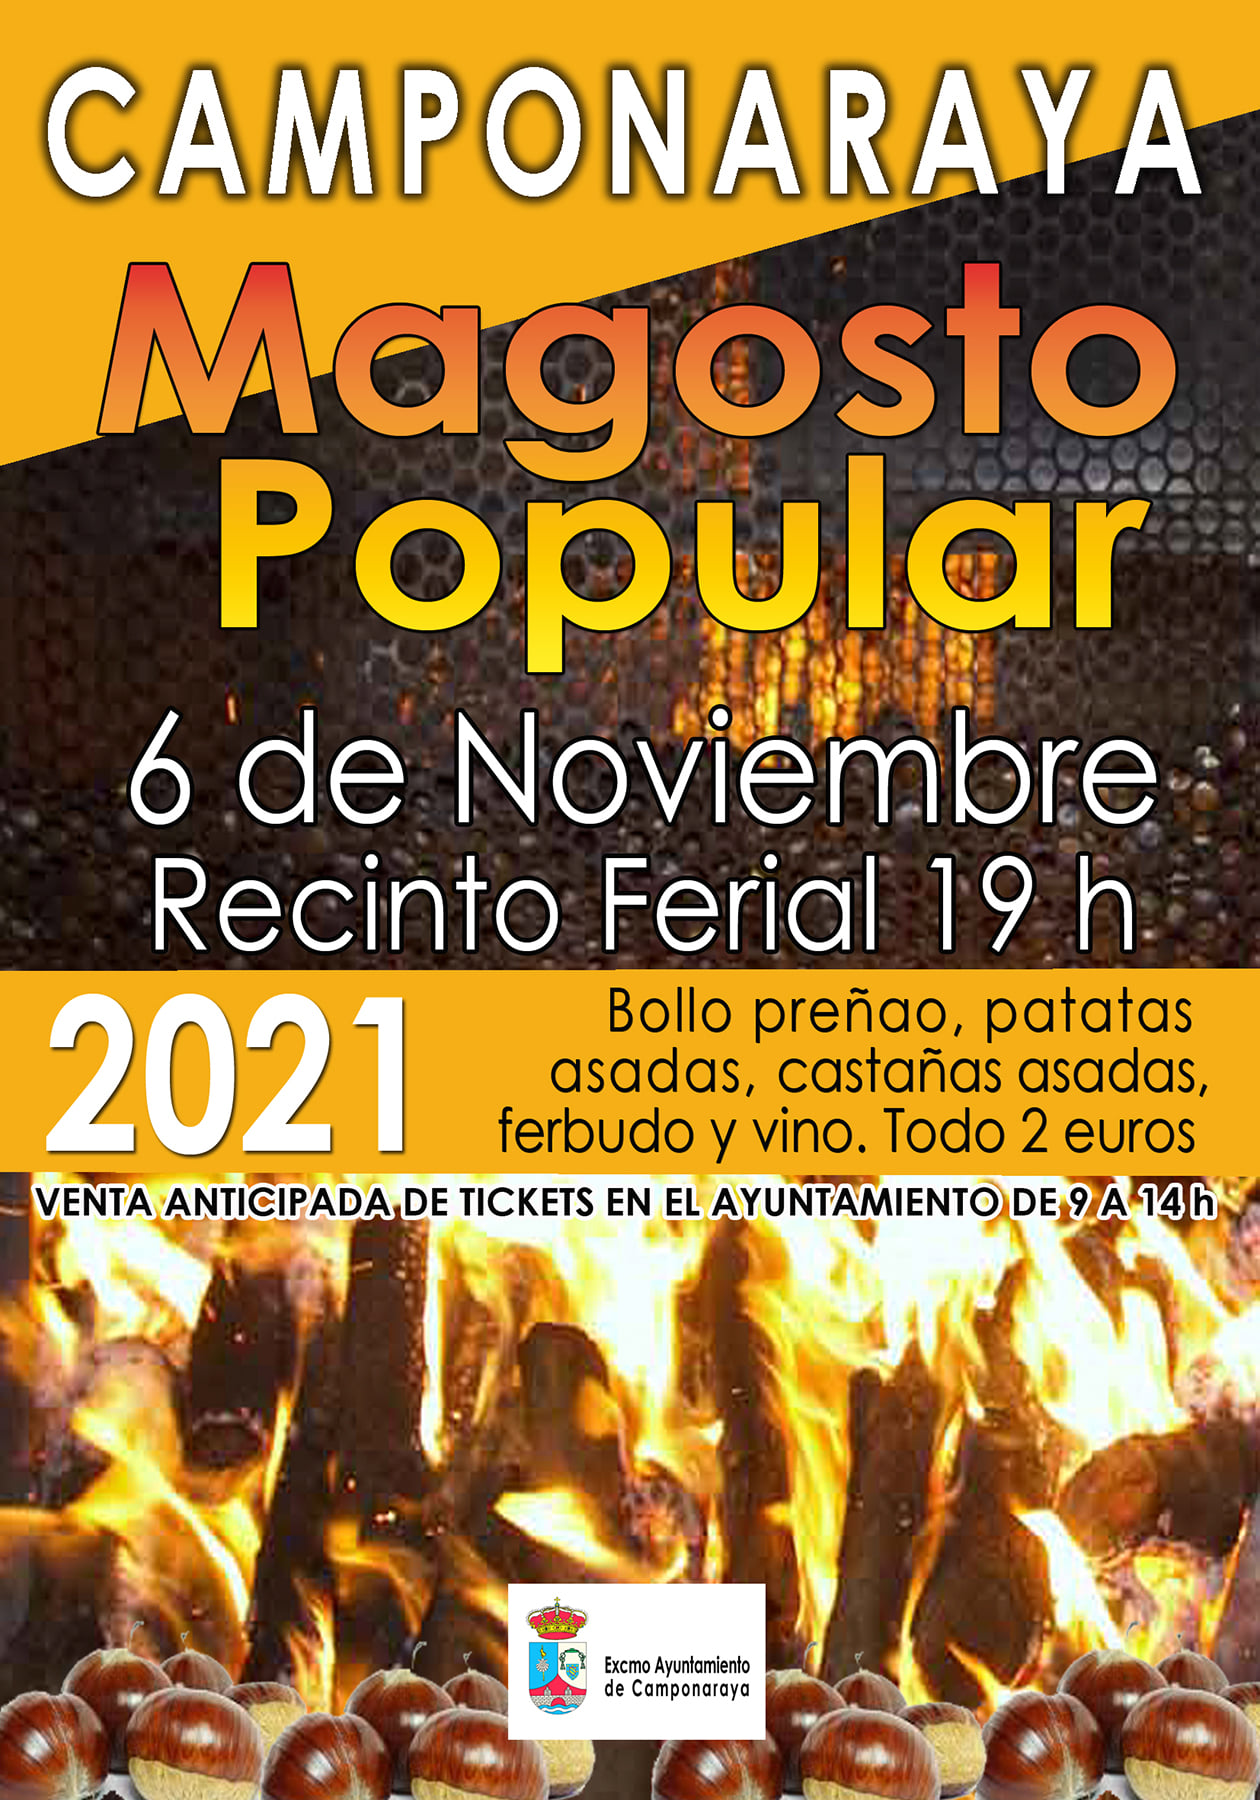 Camponaraya anuncia su Magosto Popular para el día 6 de noviembre 2